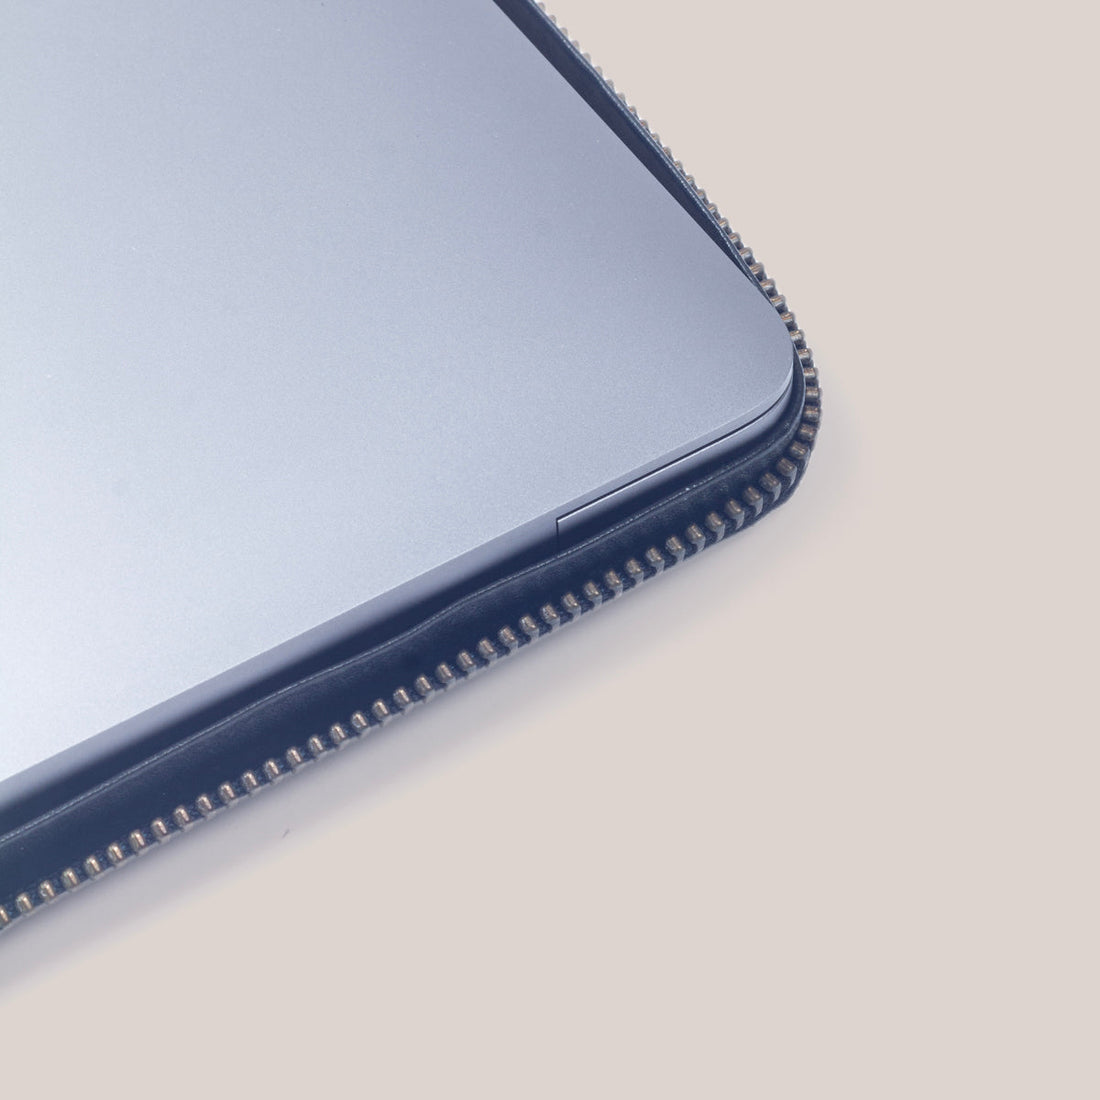 MacBook Zippered Laptop Case - Cognac